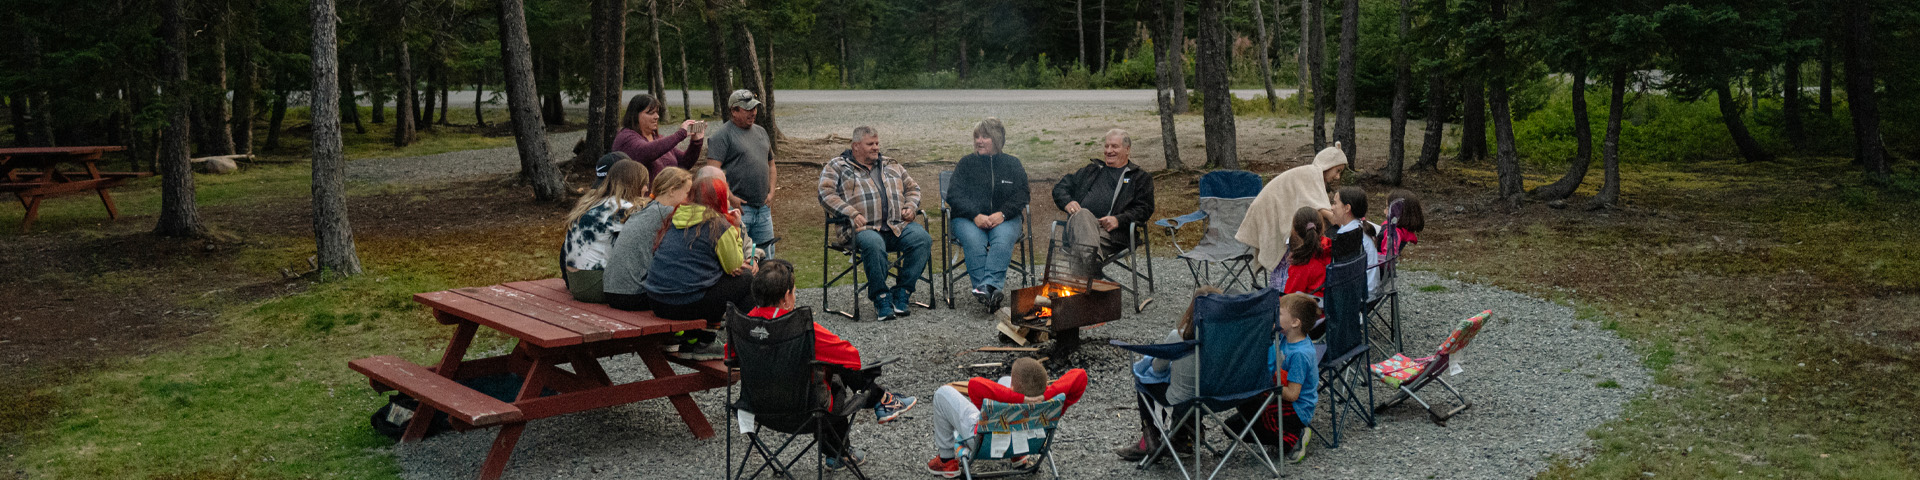 un groupe de personnes assises autour d'un feu de camp